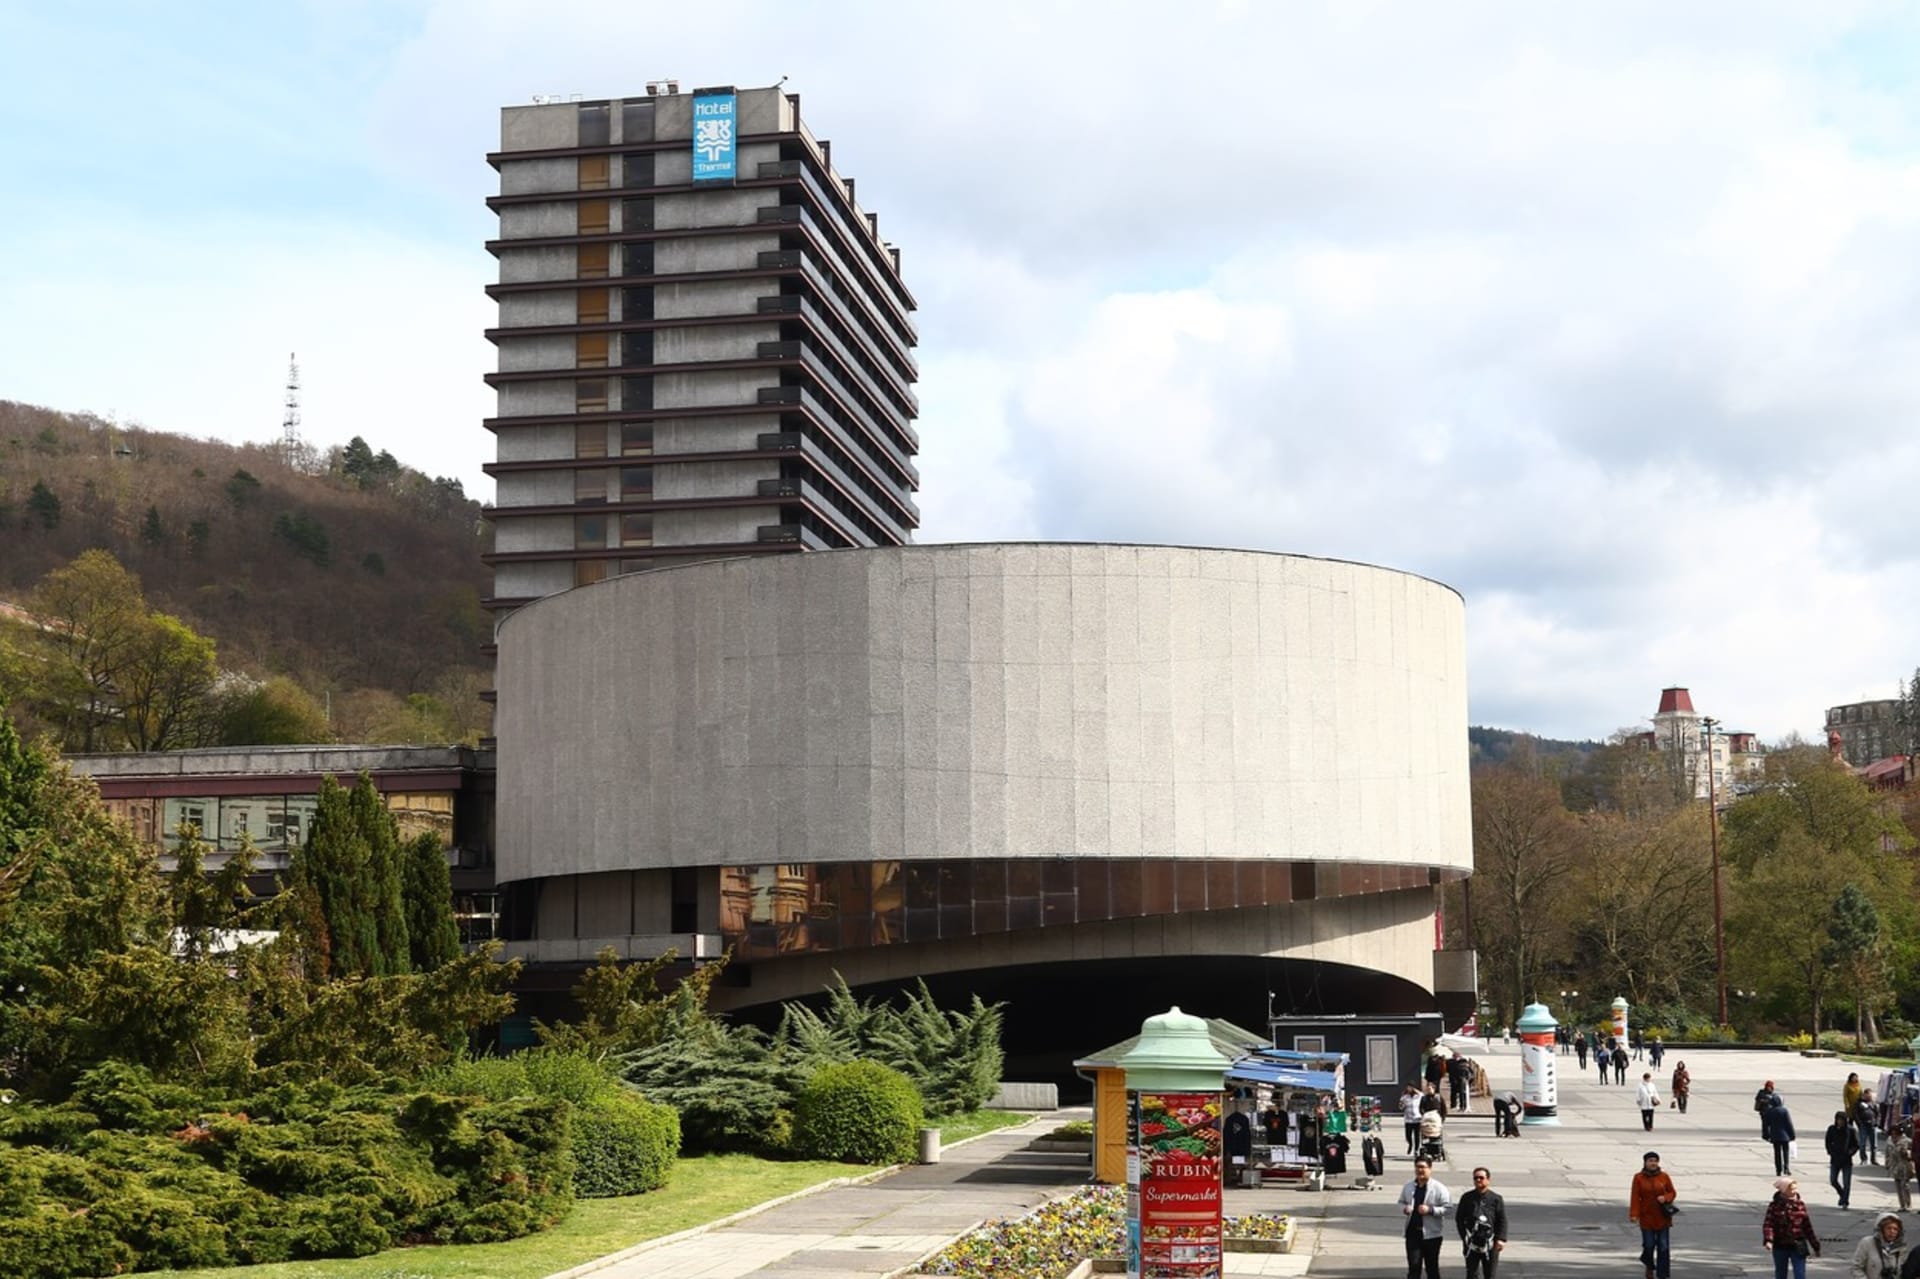 Budova hotelu Thermal a její brutalismus